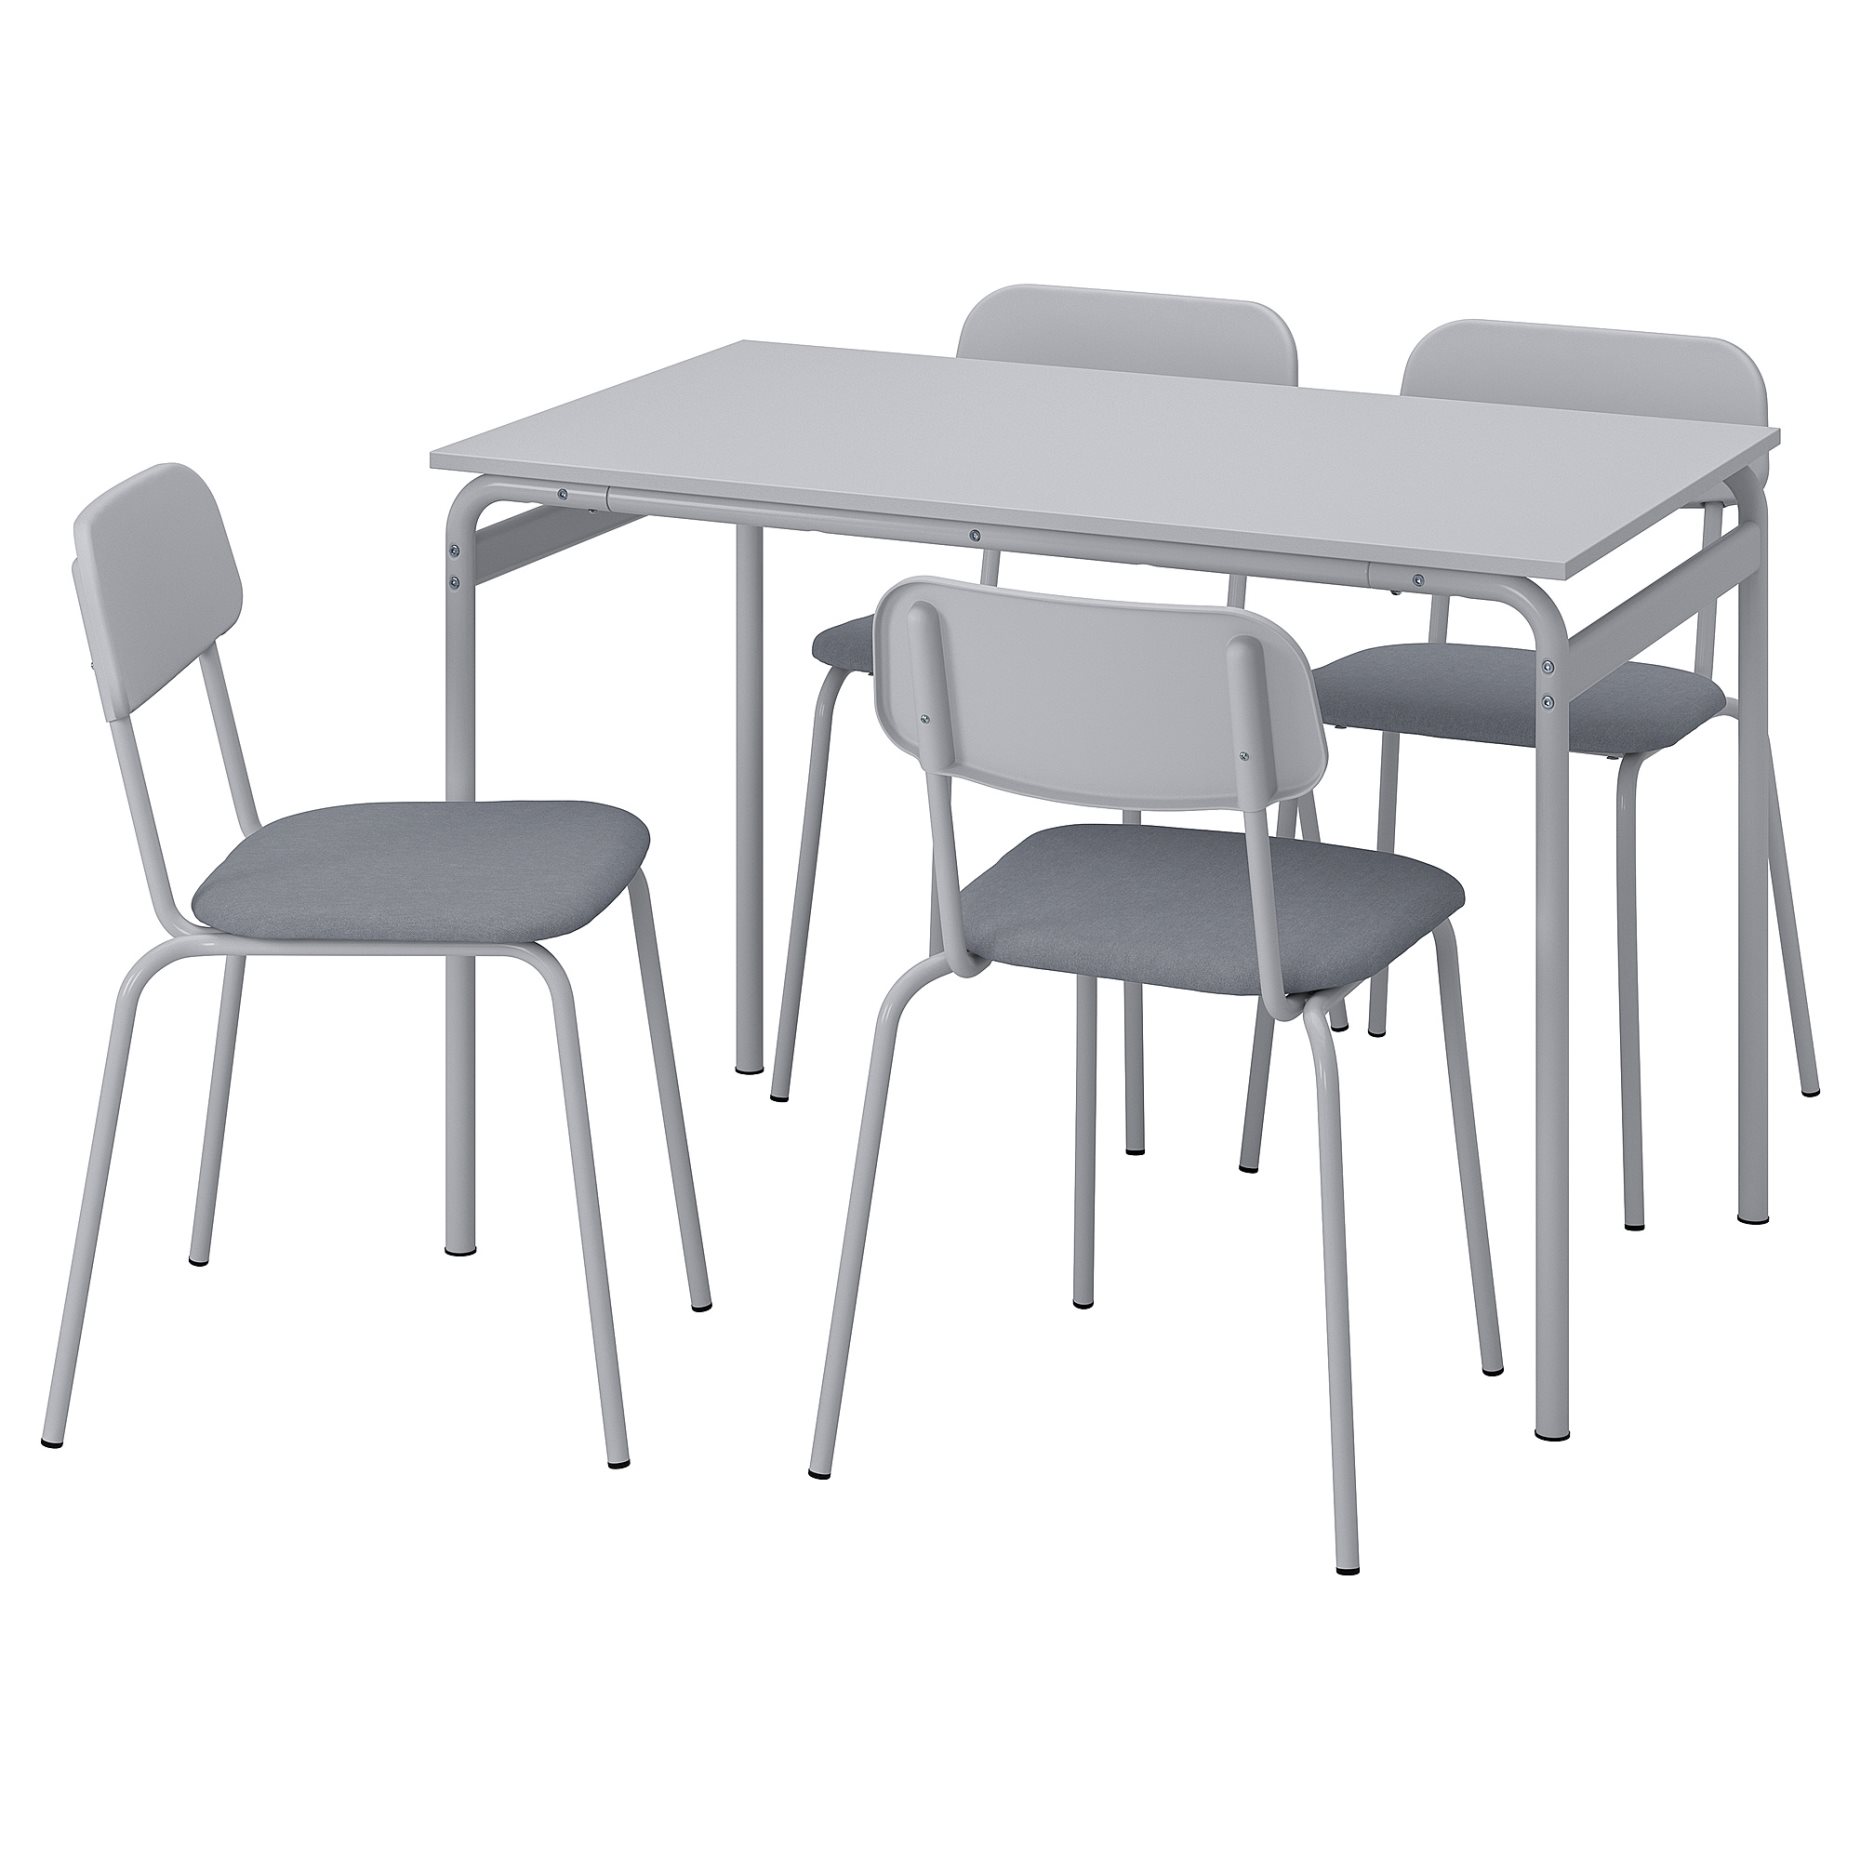 GRASALA/GRASALA, table and 4 chairs, 110 cm, 694.840.43